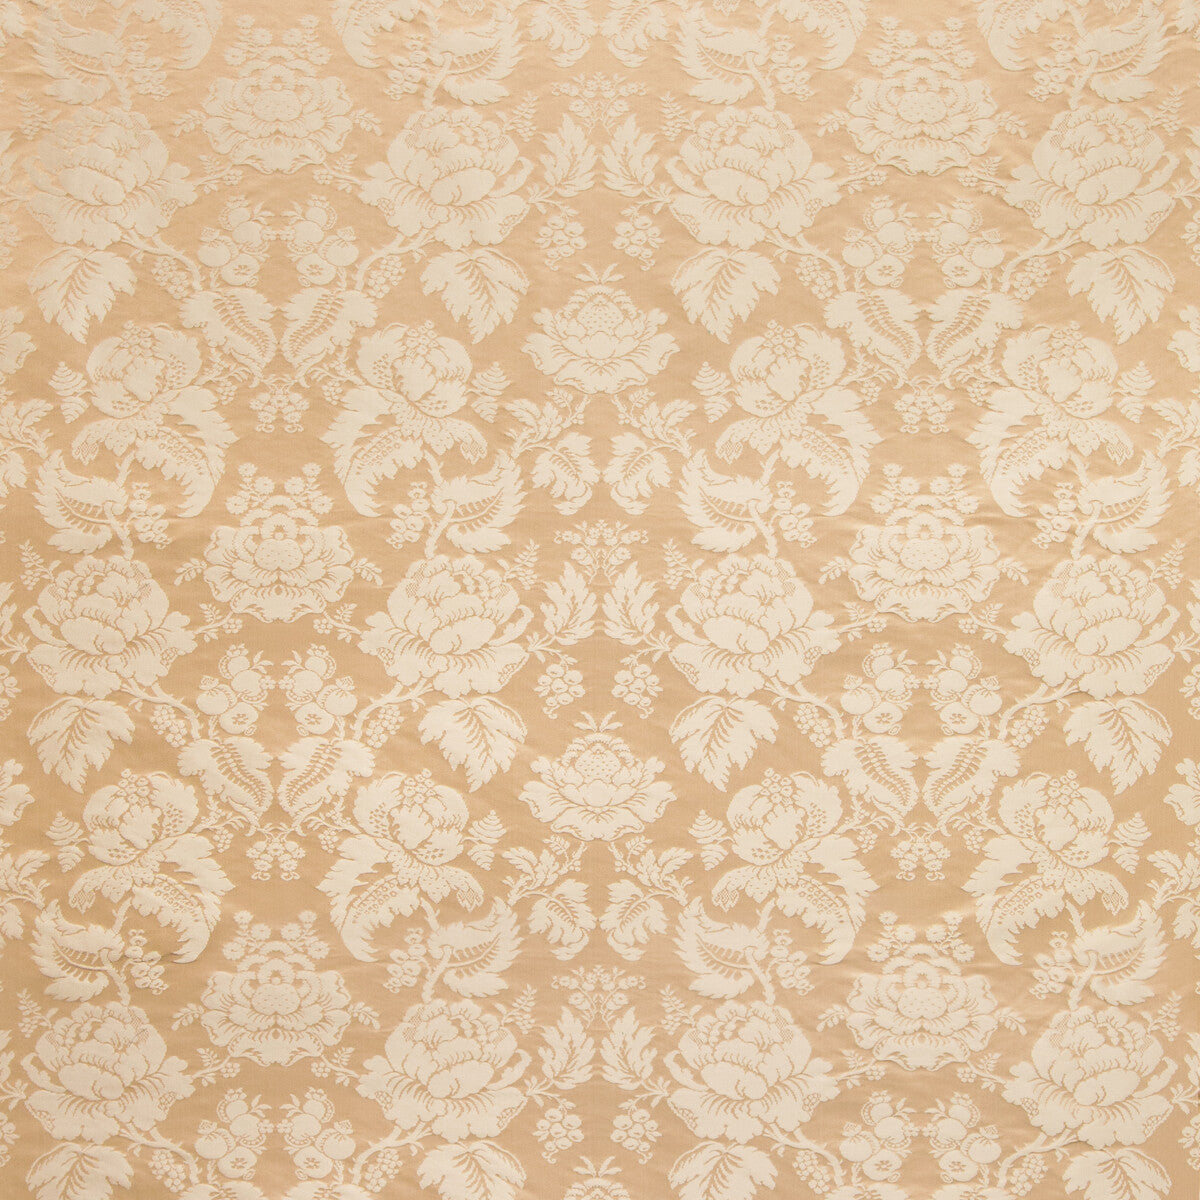 Moulins Damask fabric in sand color - pattern BR-81035.1116.0 - by Brunschwig &amp; Fils